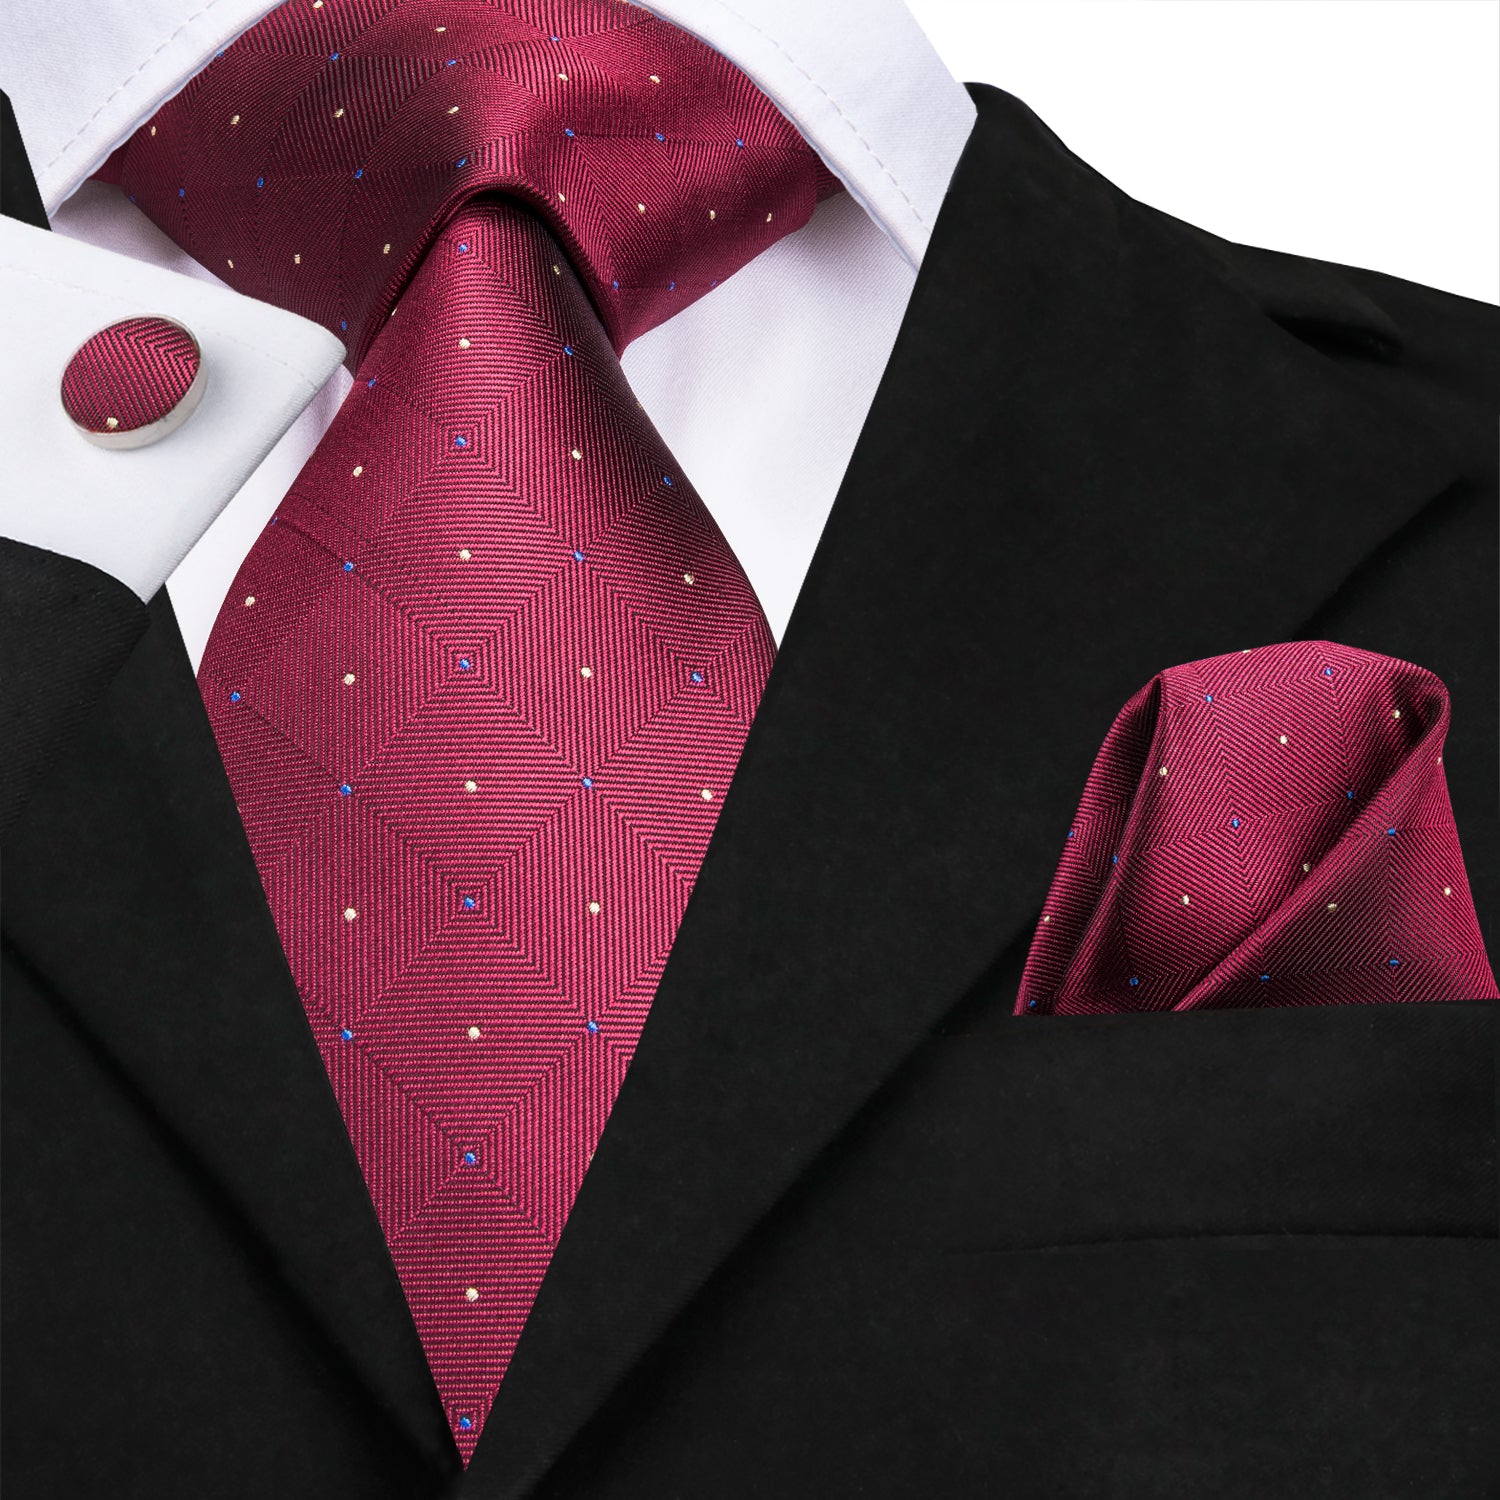  Wine Red Ties Plaid Necktie Pocket Square Cufflinks Set